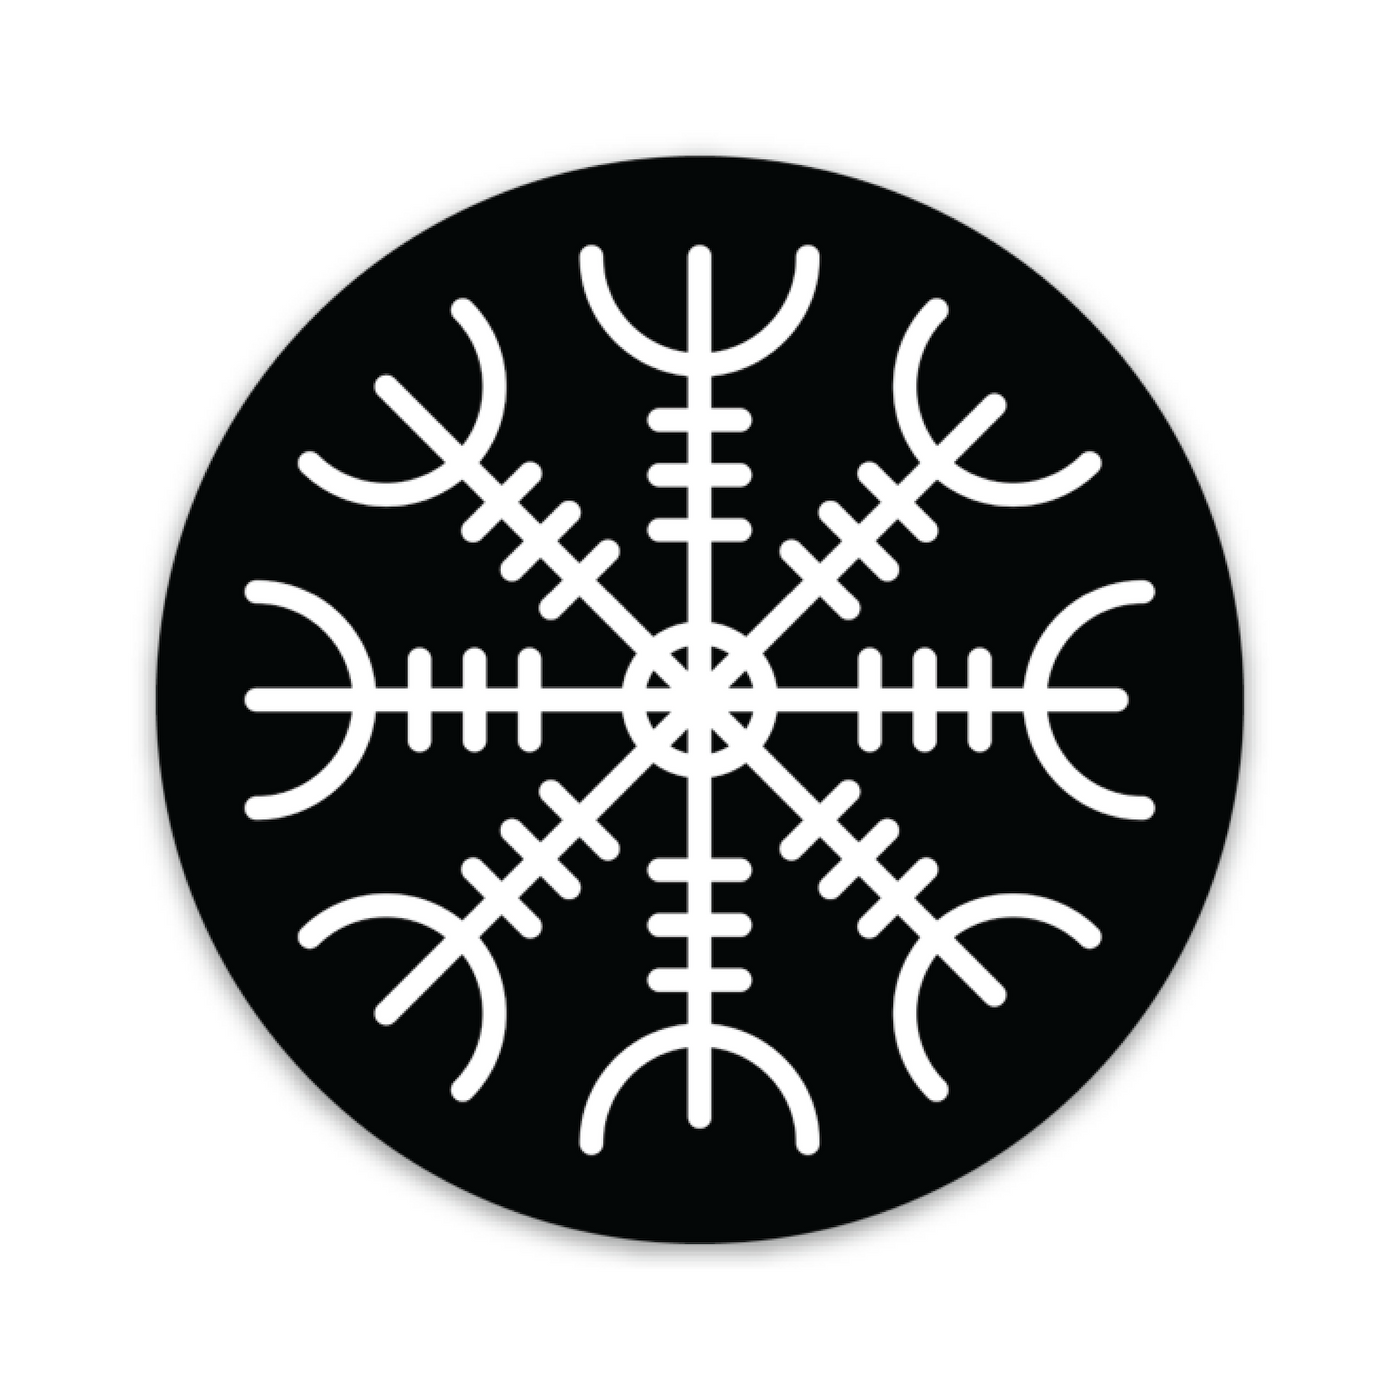 Ægishjálmr Helm of Awe Sticker